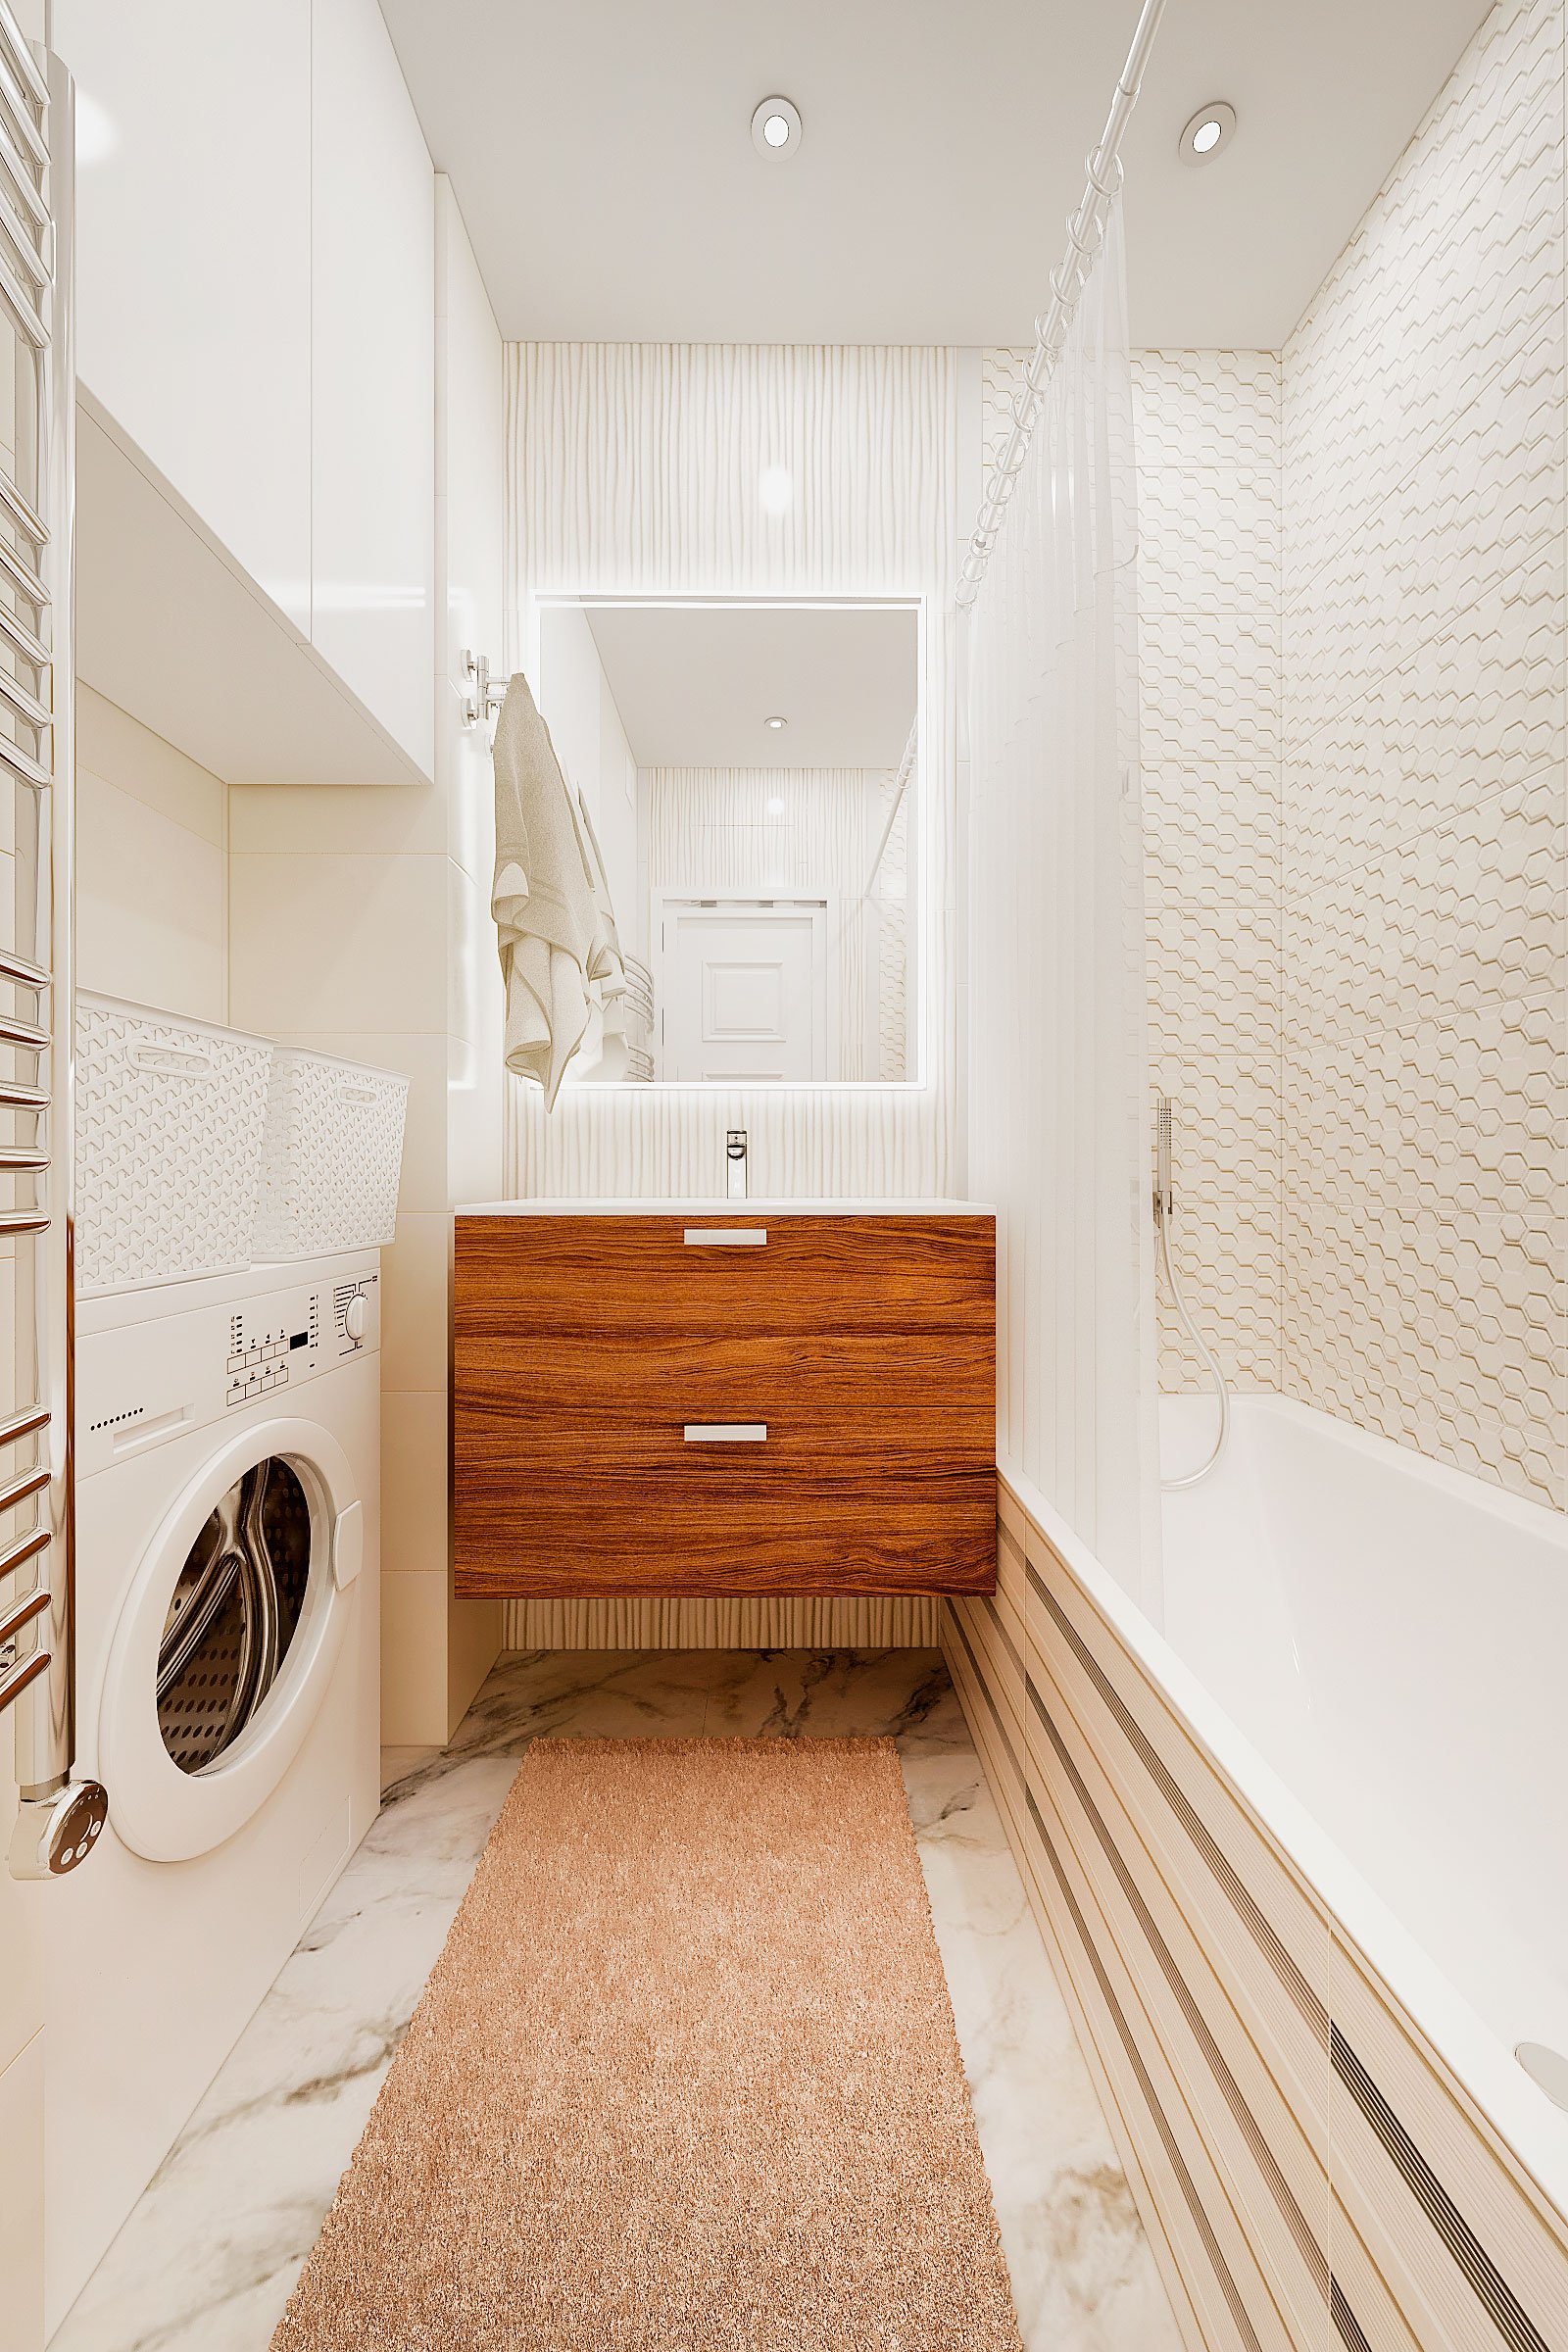 дизайн интерьера ванной в современном стиле, Гомель 2018, фото №1